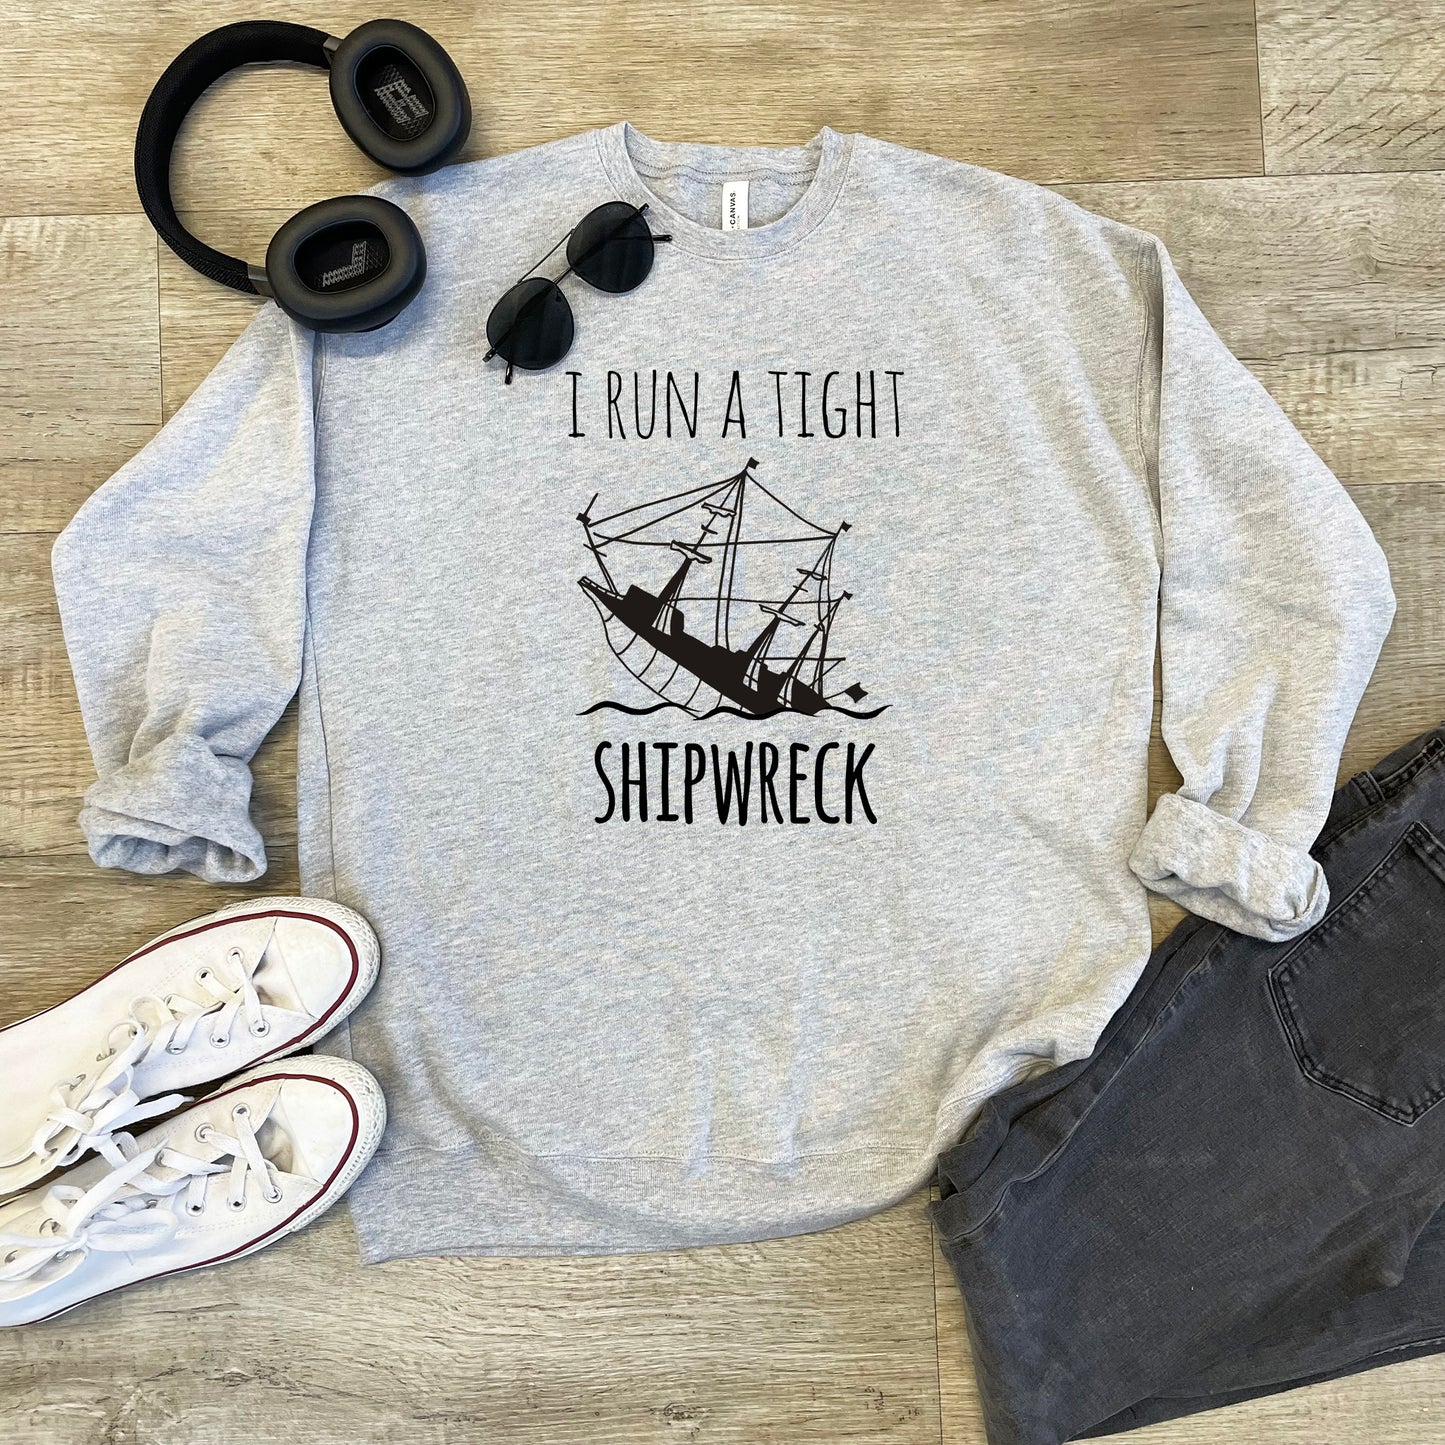 I Run A Tight Shipwreck - Unisex Sweatshirt - Heather Gray or Dusty Blue